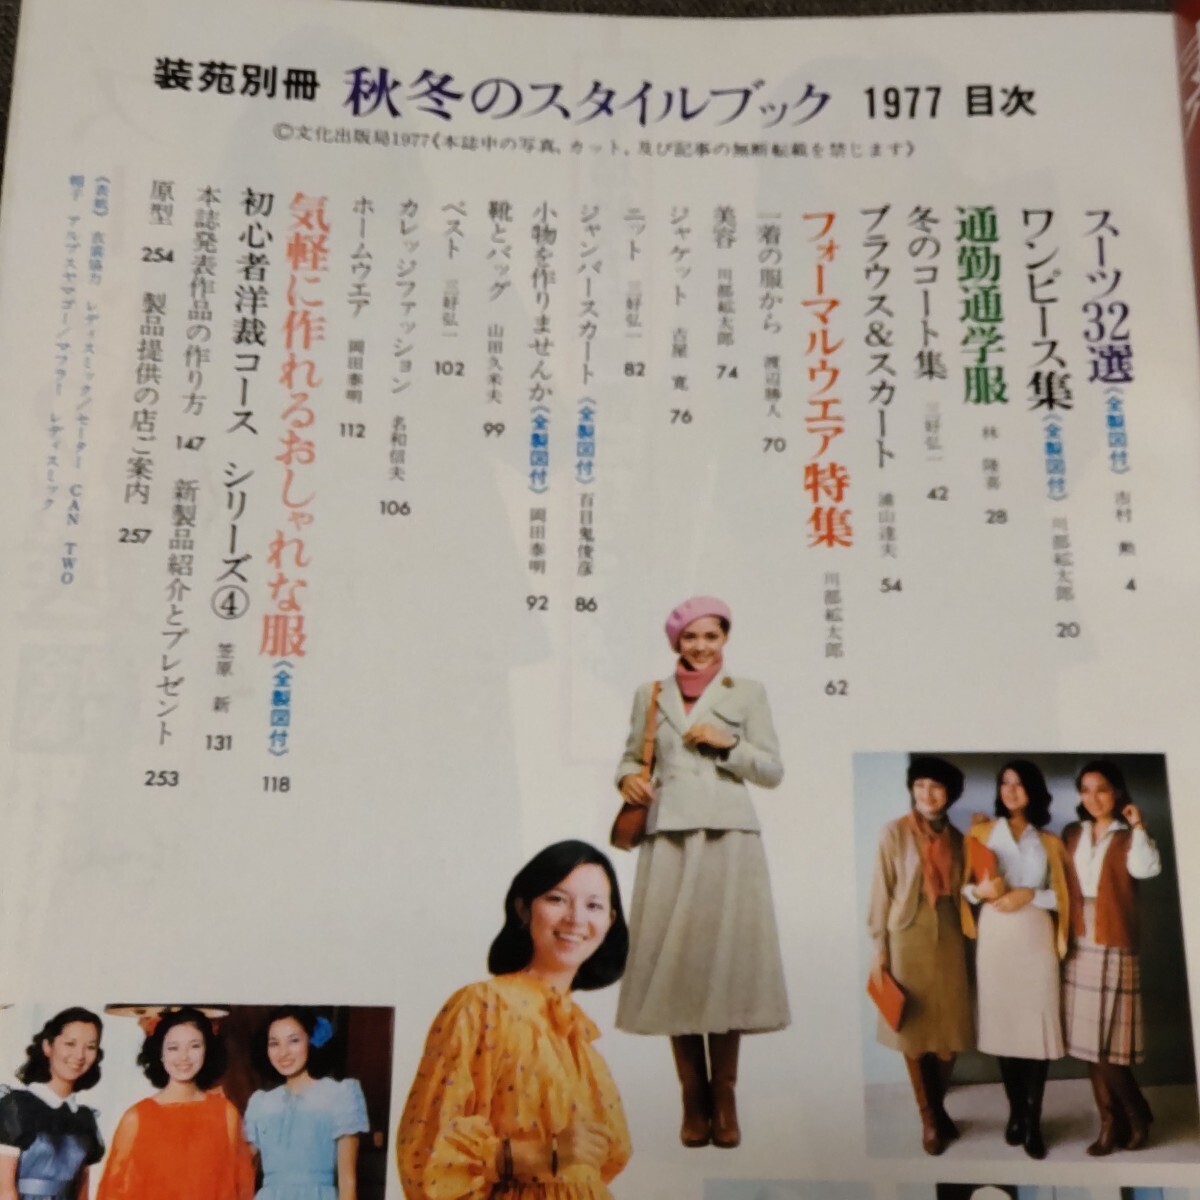 装苑別冊 1977年 秋冬のスタイルブック 昭和レトロファッションの画像5